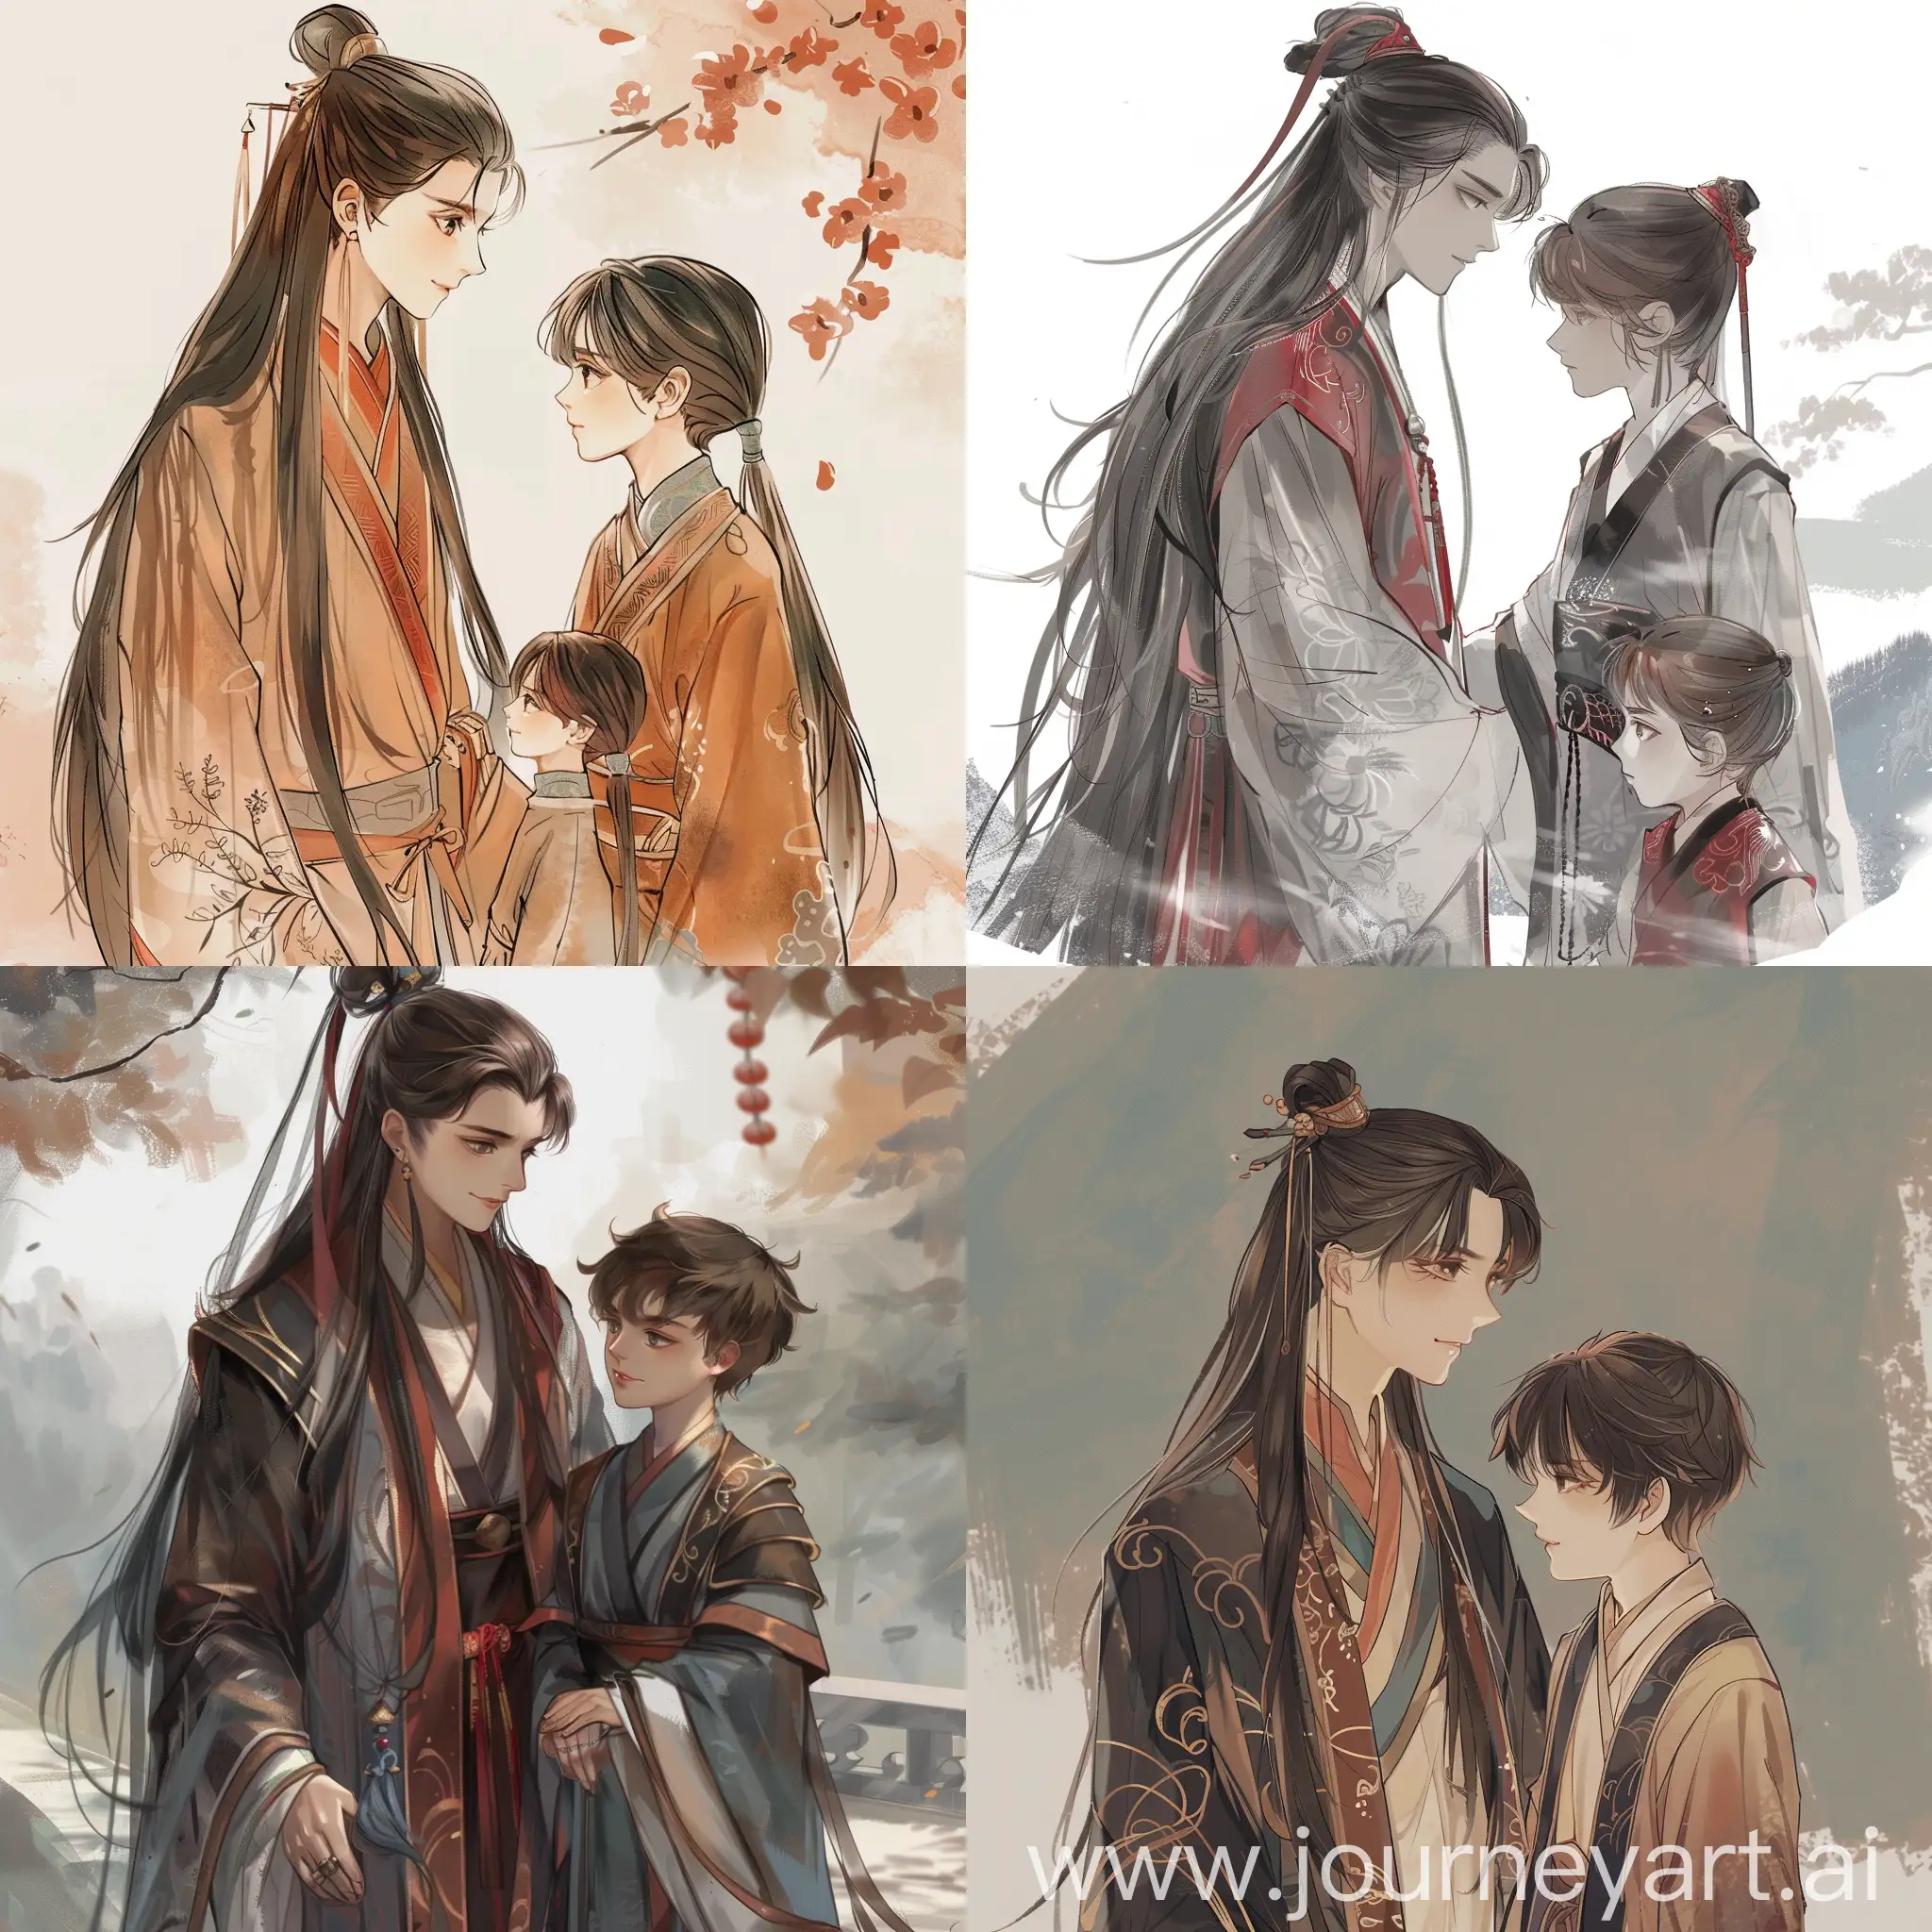 deux garçons amoureux, un alpha avec les cheveux longs dans un vêtement traditionnel chinois et un garçon plus petit et mignon avec les cheveux court dans un vêtement traditionnel chinois